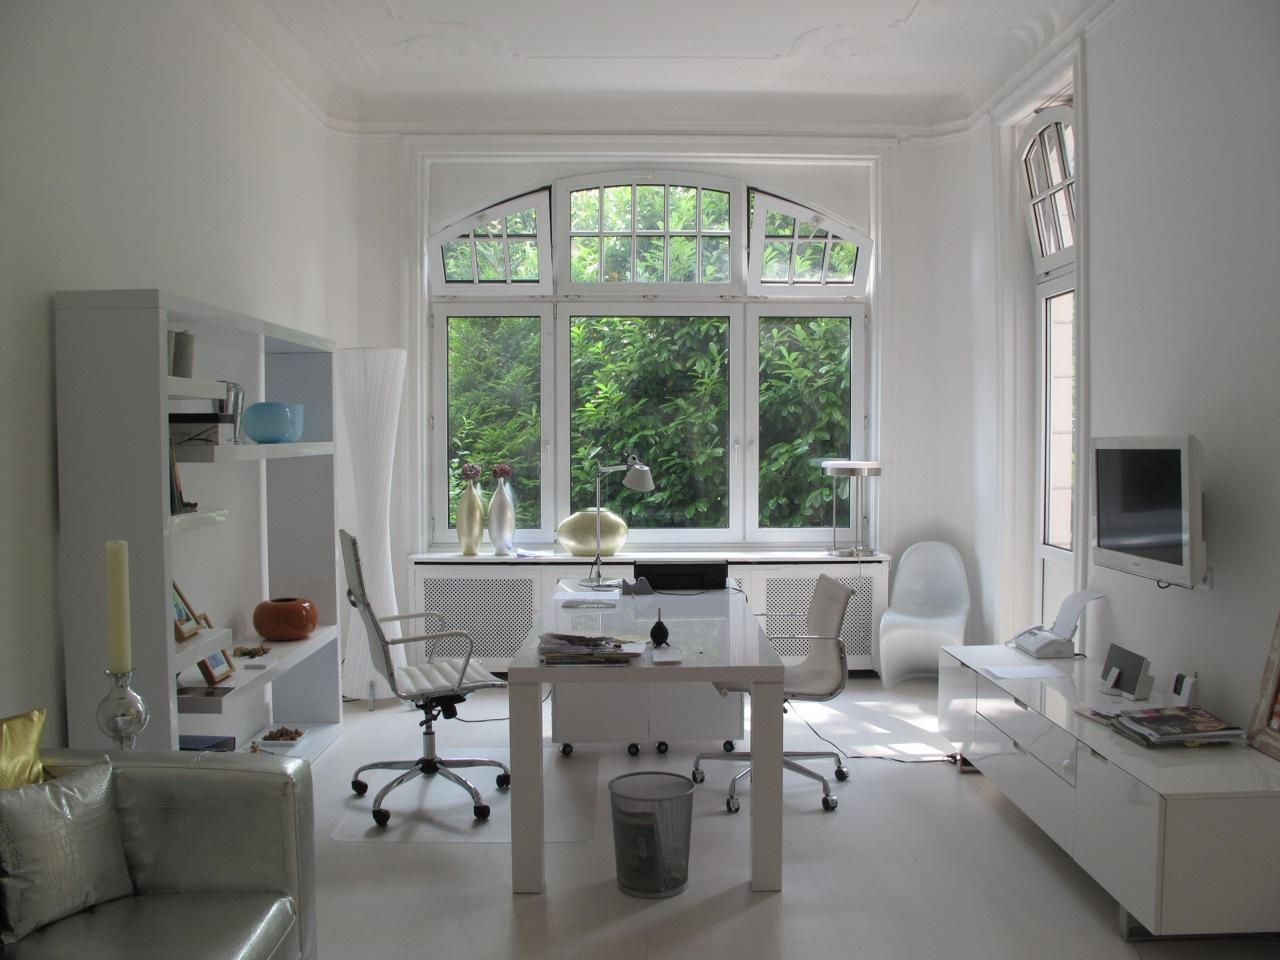 Wohn- und Arbeitsbereich in Weiß #bürostuhl #altbau #arbeitsecke #wohnzimmerarbeitsplatz ©scout for location